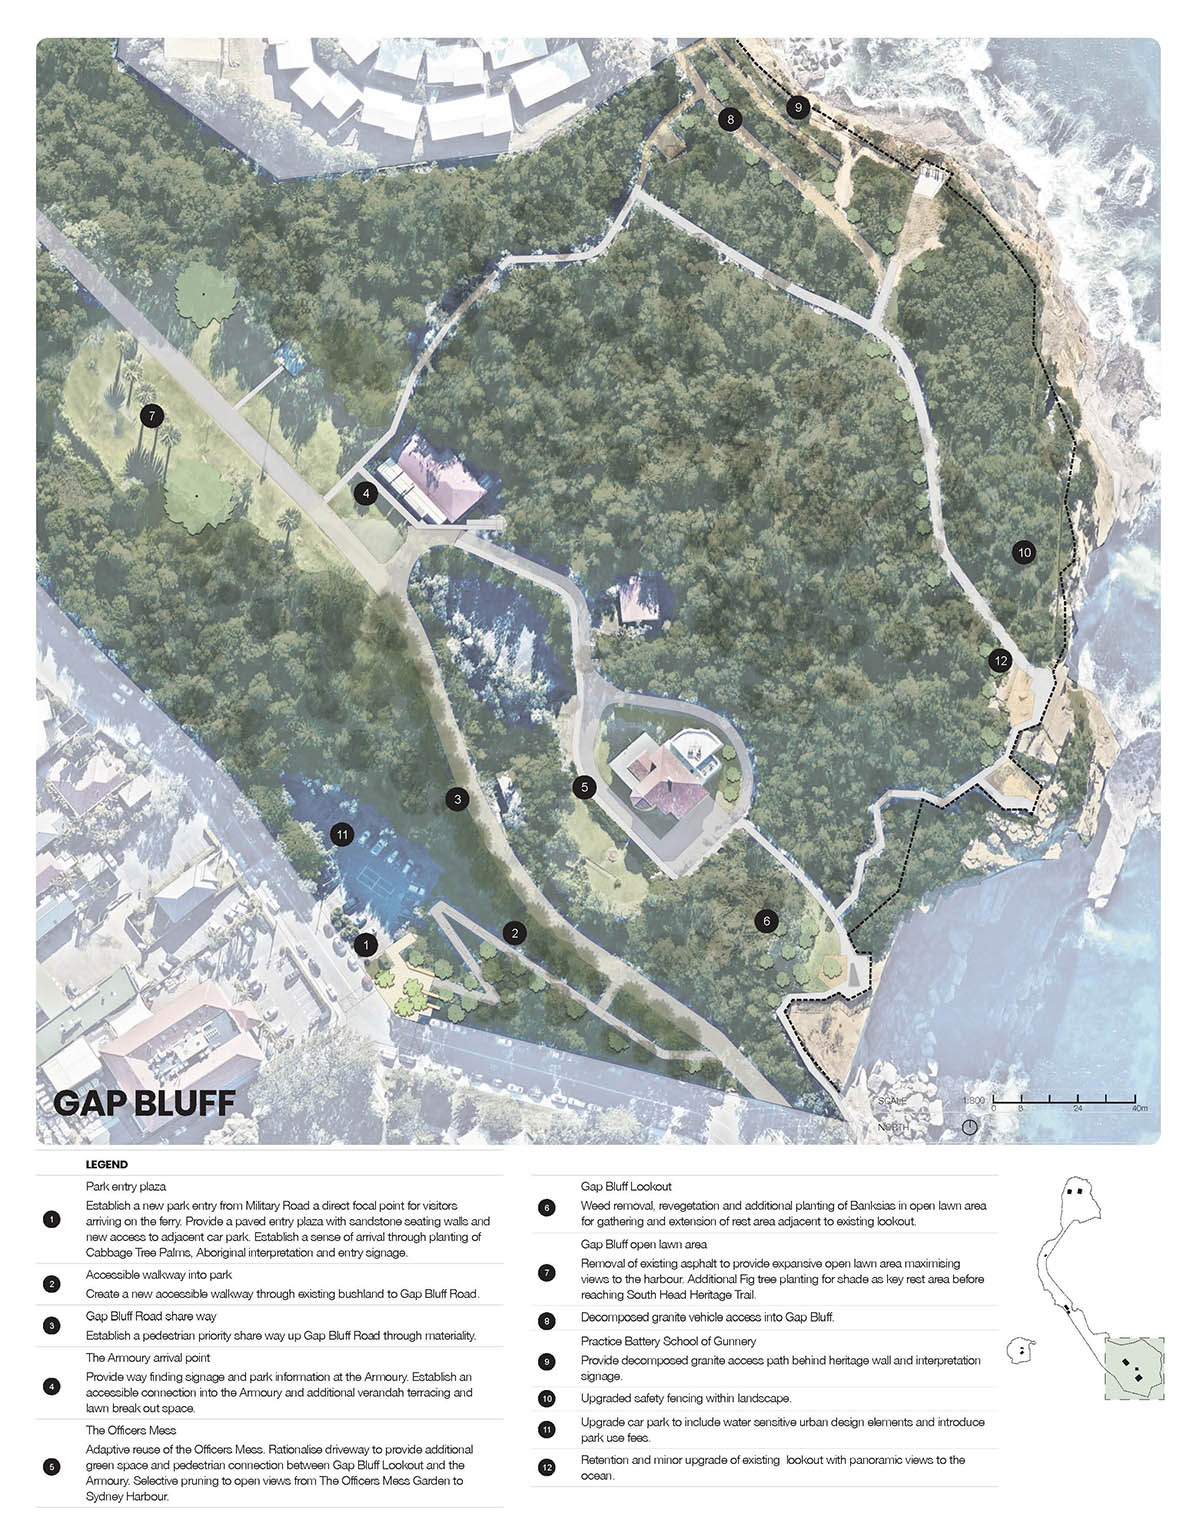 Public Domain, South Head Master Plan, Landscape Architecture